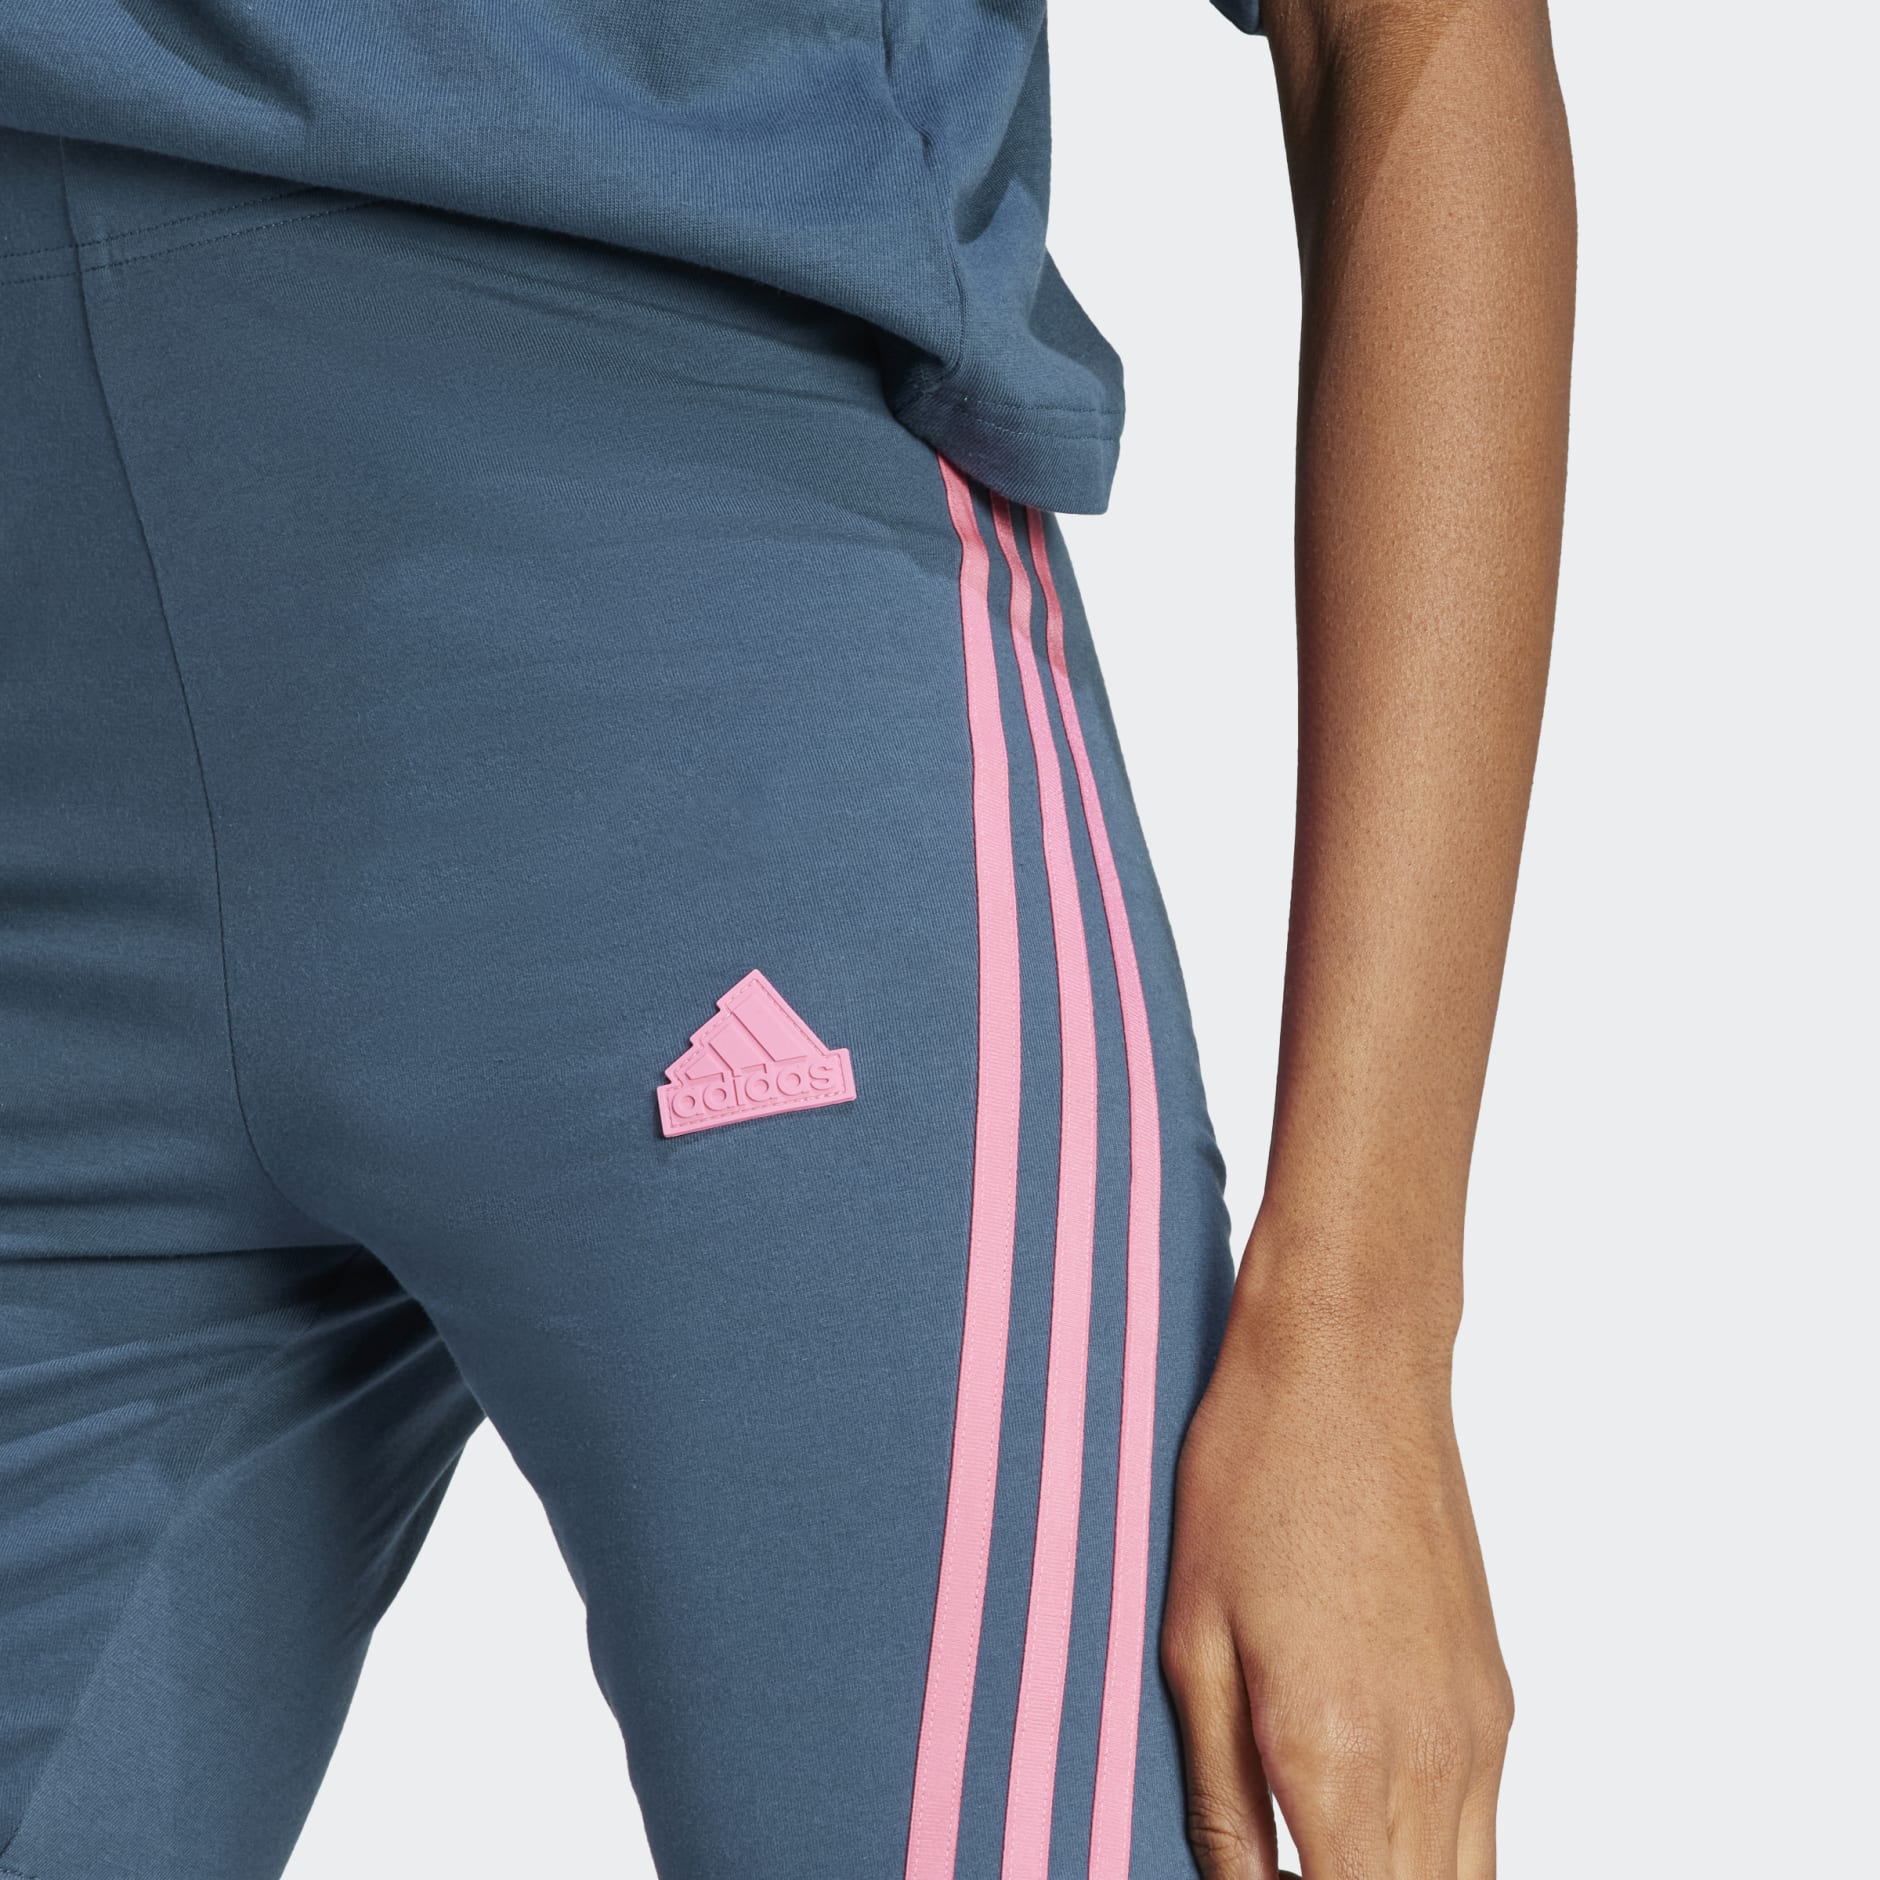 Women's Clothing - Future Icons 3-Stripes Bike Shorts - Turquoise 